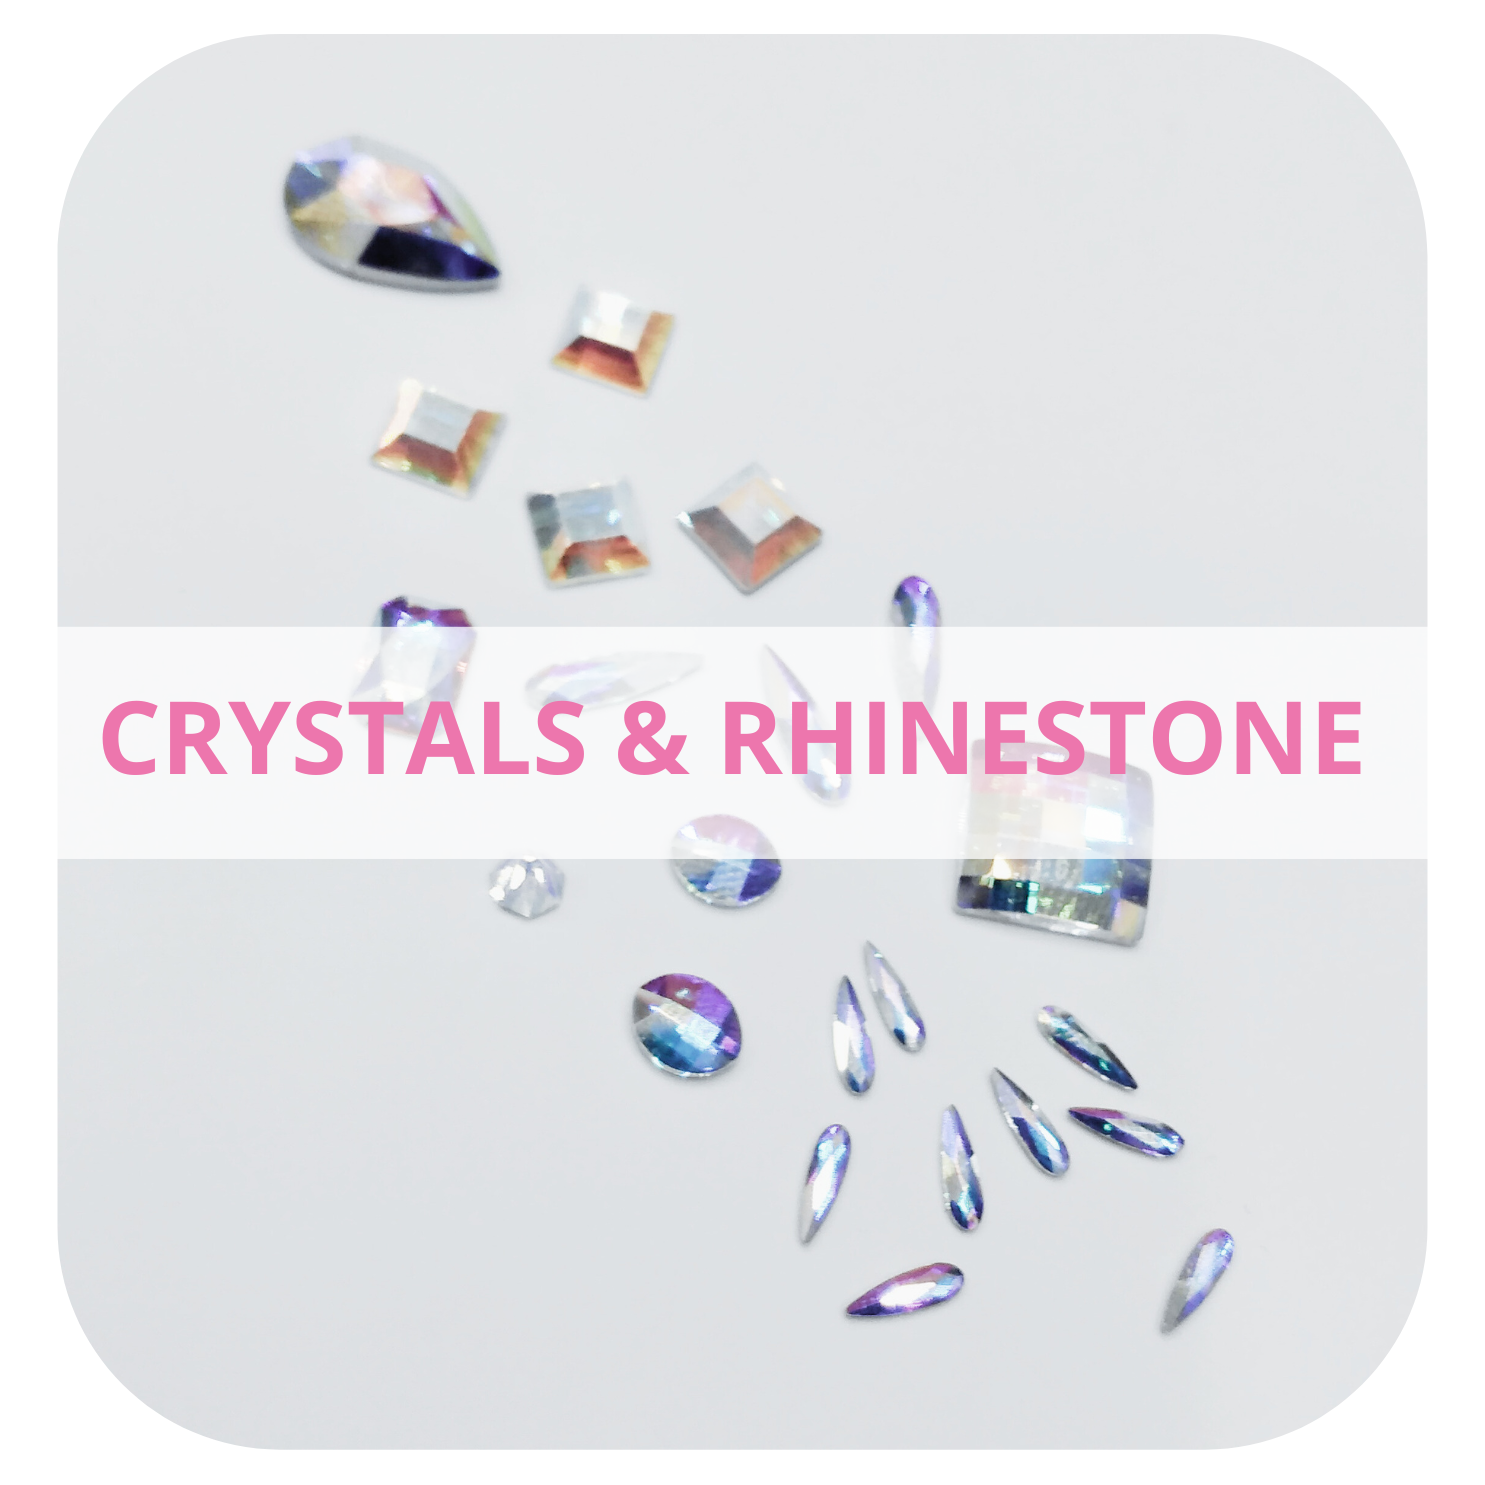 Crystals & Rhinestone